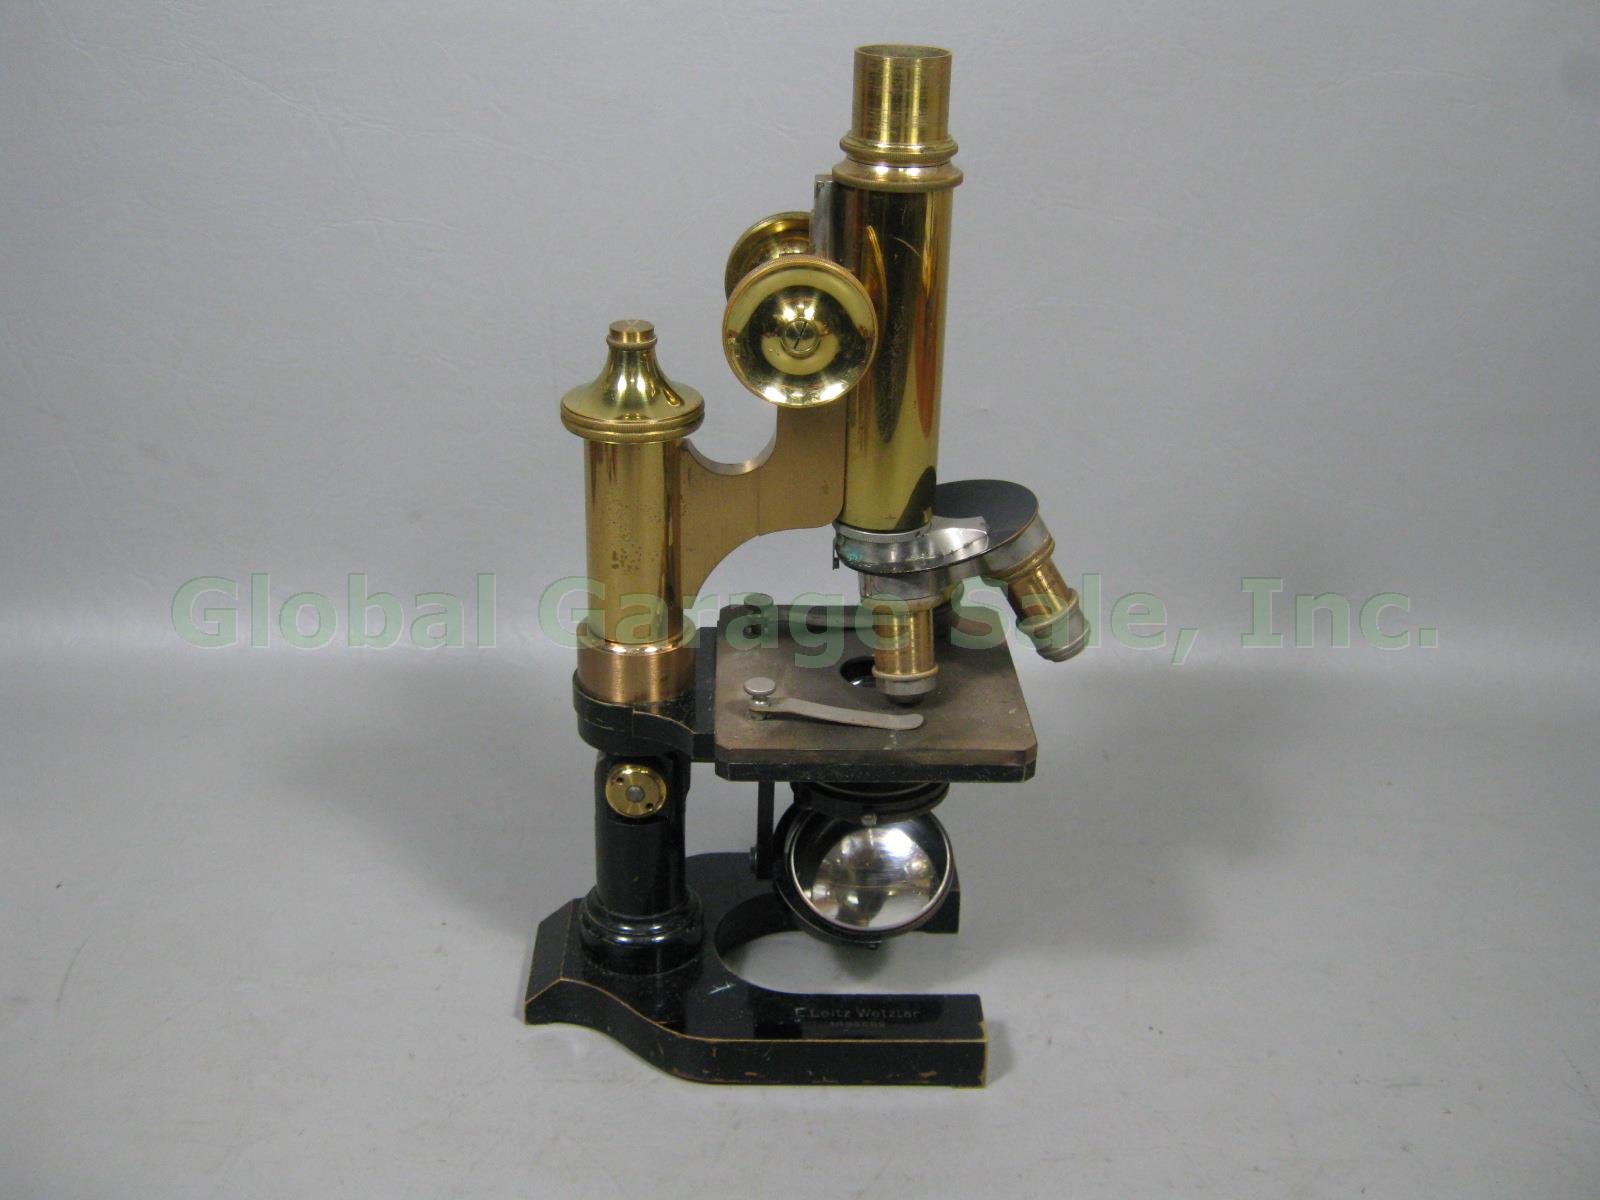 Vtg Antique E Leitz Wetzlar Brass Microscope 94062 Oil Immersion Objective +Case 1